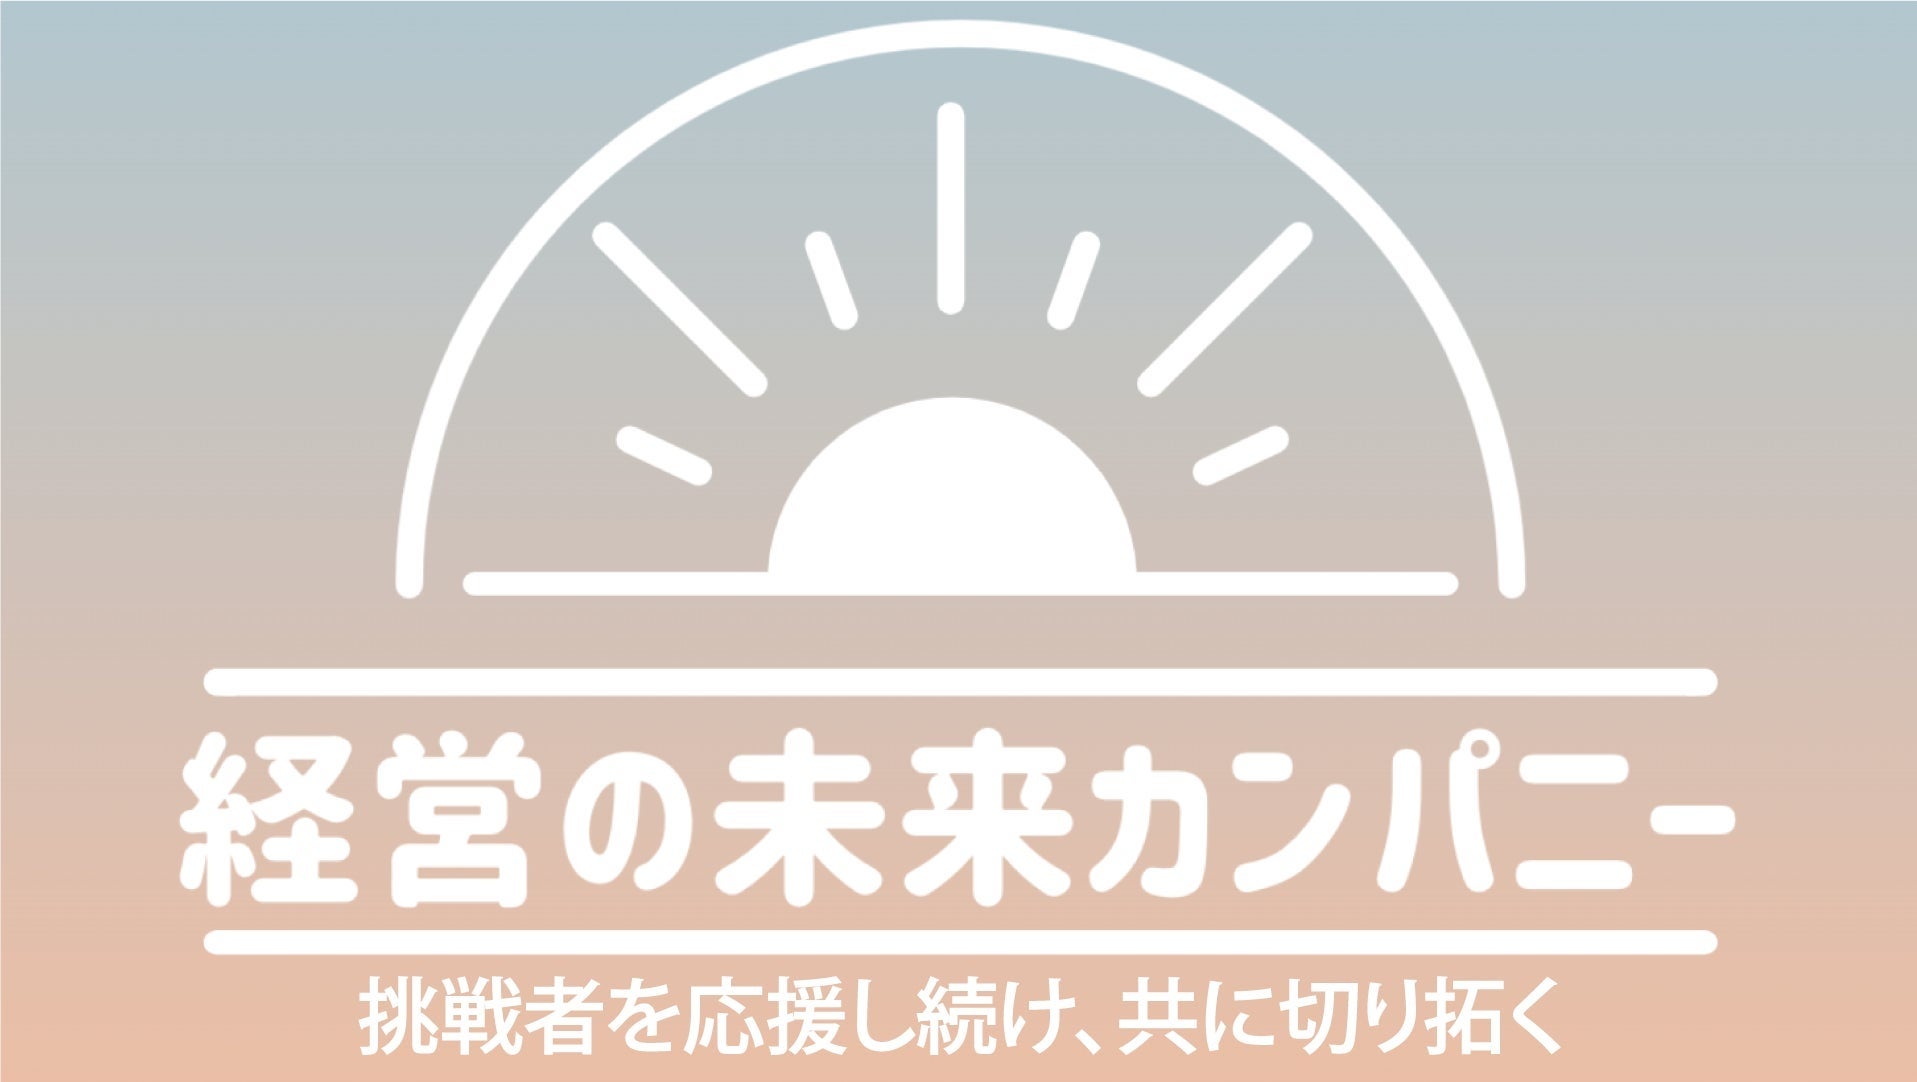 【50メディア以上の支援実績をもとにした『コミュニティドリブンマーケティング』】こどもの未来総研運営の「ママ広場」がマーケティングサービス開始。120名を突破した「東京都中央区ママ広場」とも連携のサブ画像9